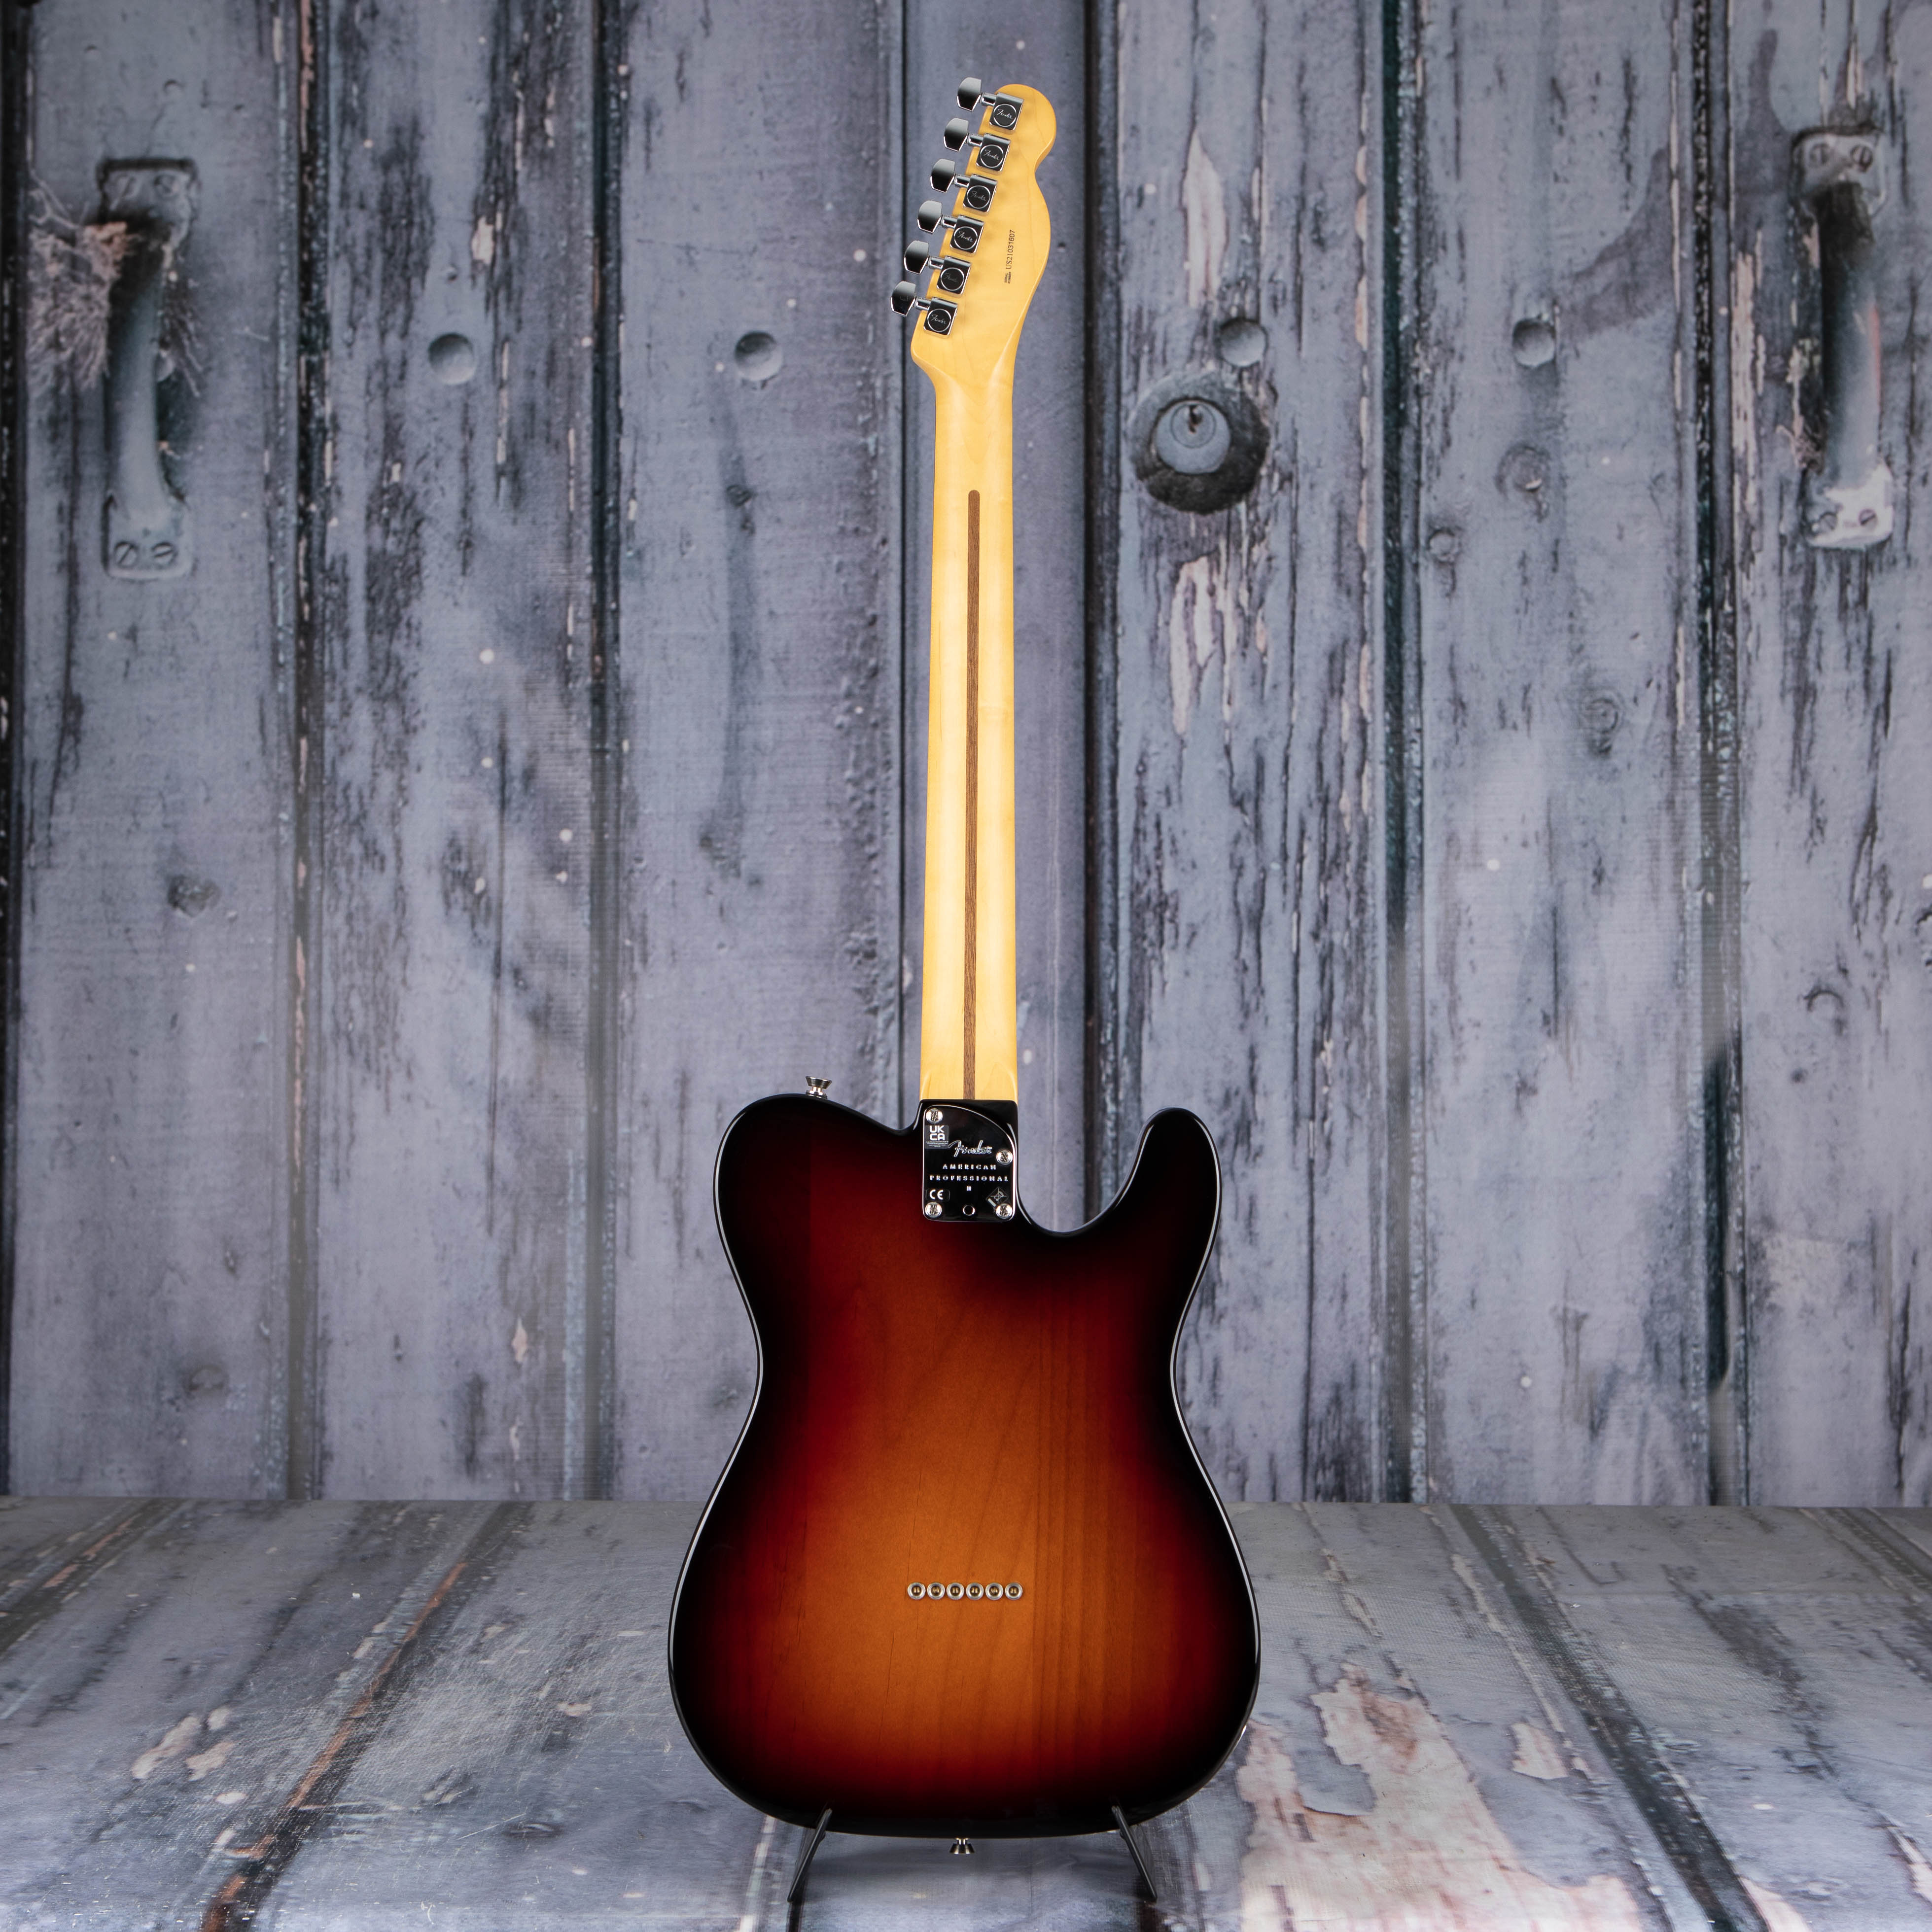 Fender American Professional II Telecaster Left-Handed Electric Guitar, 3-Color Sunburst, back